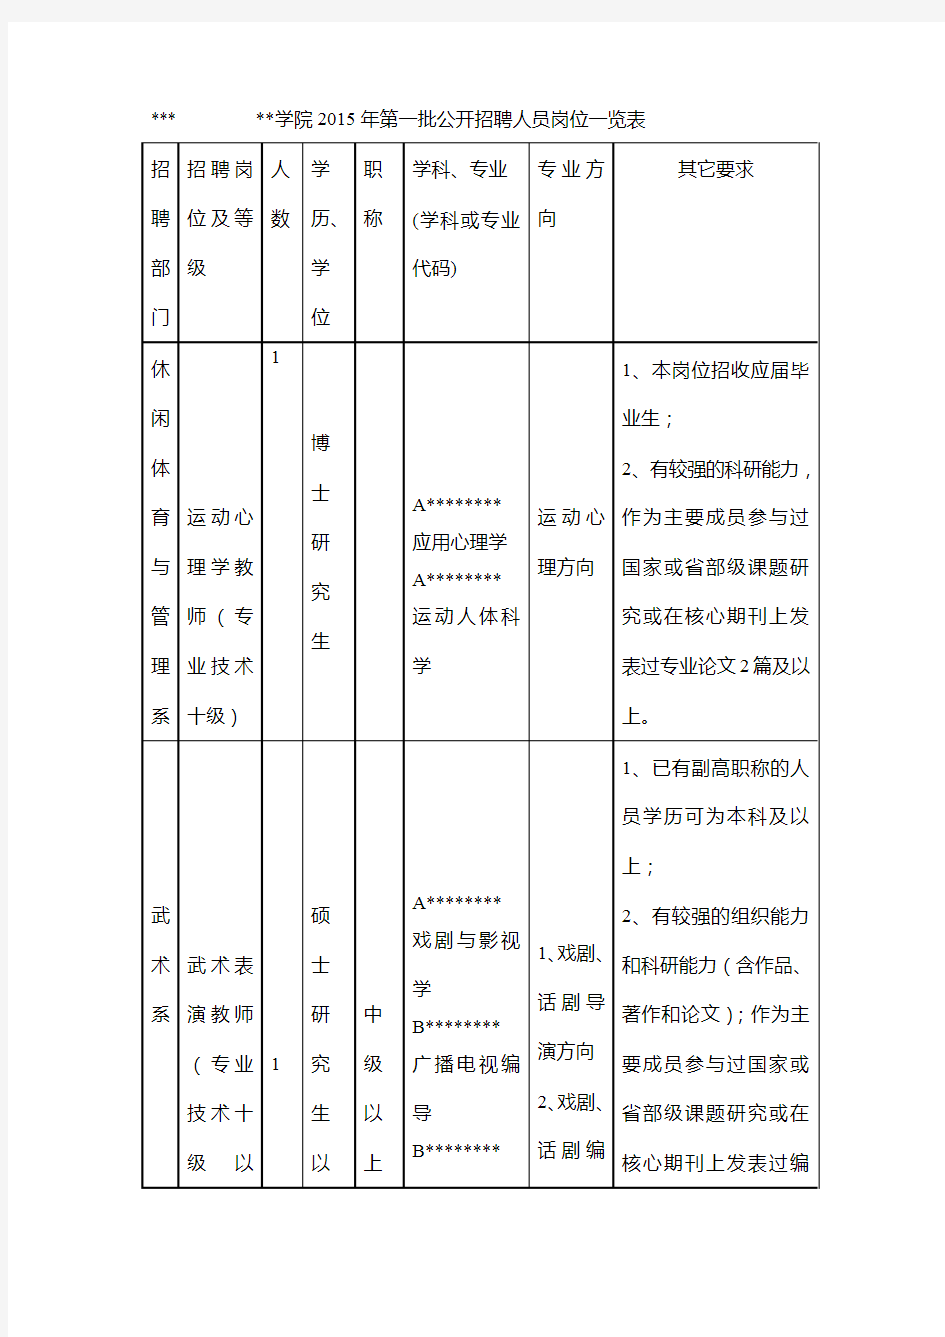 广州体育学院2015年第一批公开招聘人员岗位一览表【模板】